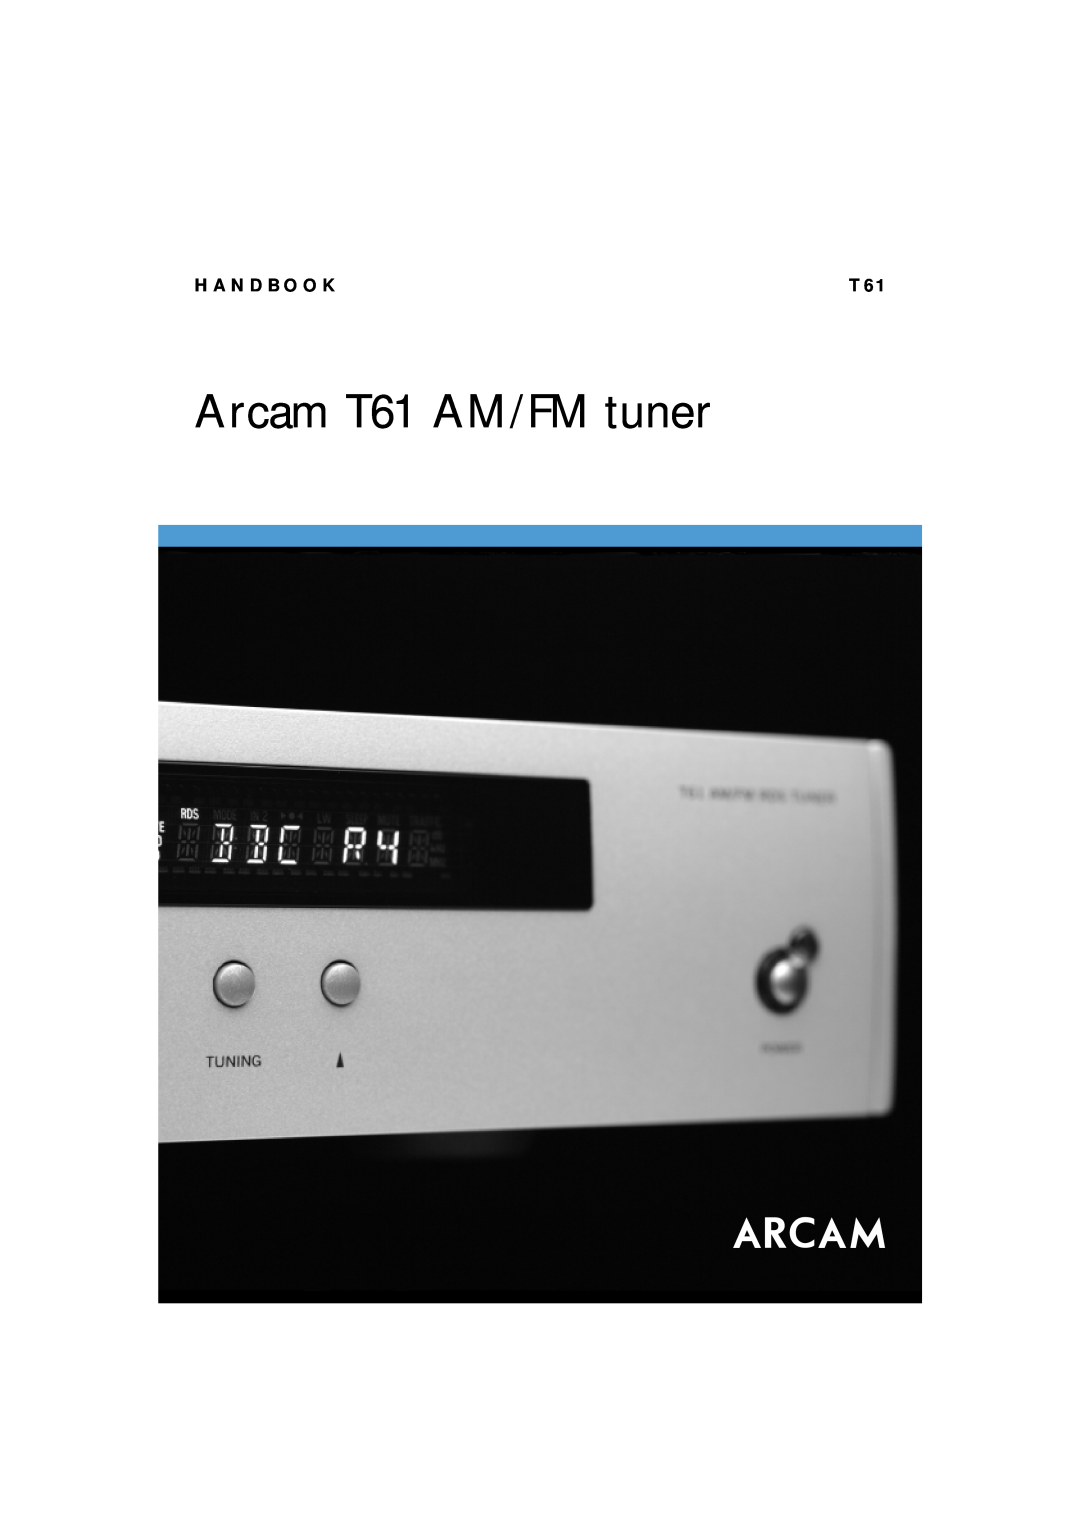 Arcam manual Arcam T61 AM/FM tuner, H A N D B O O K 